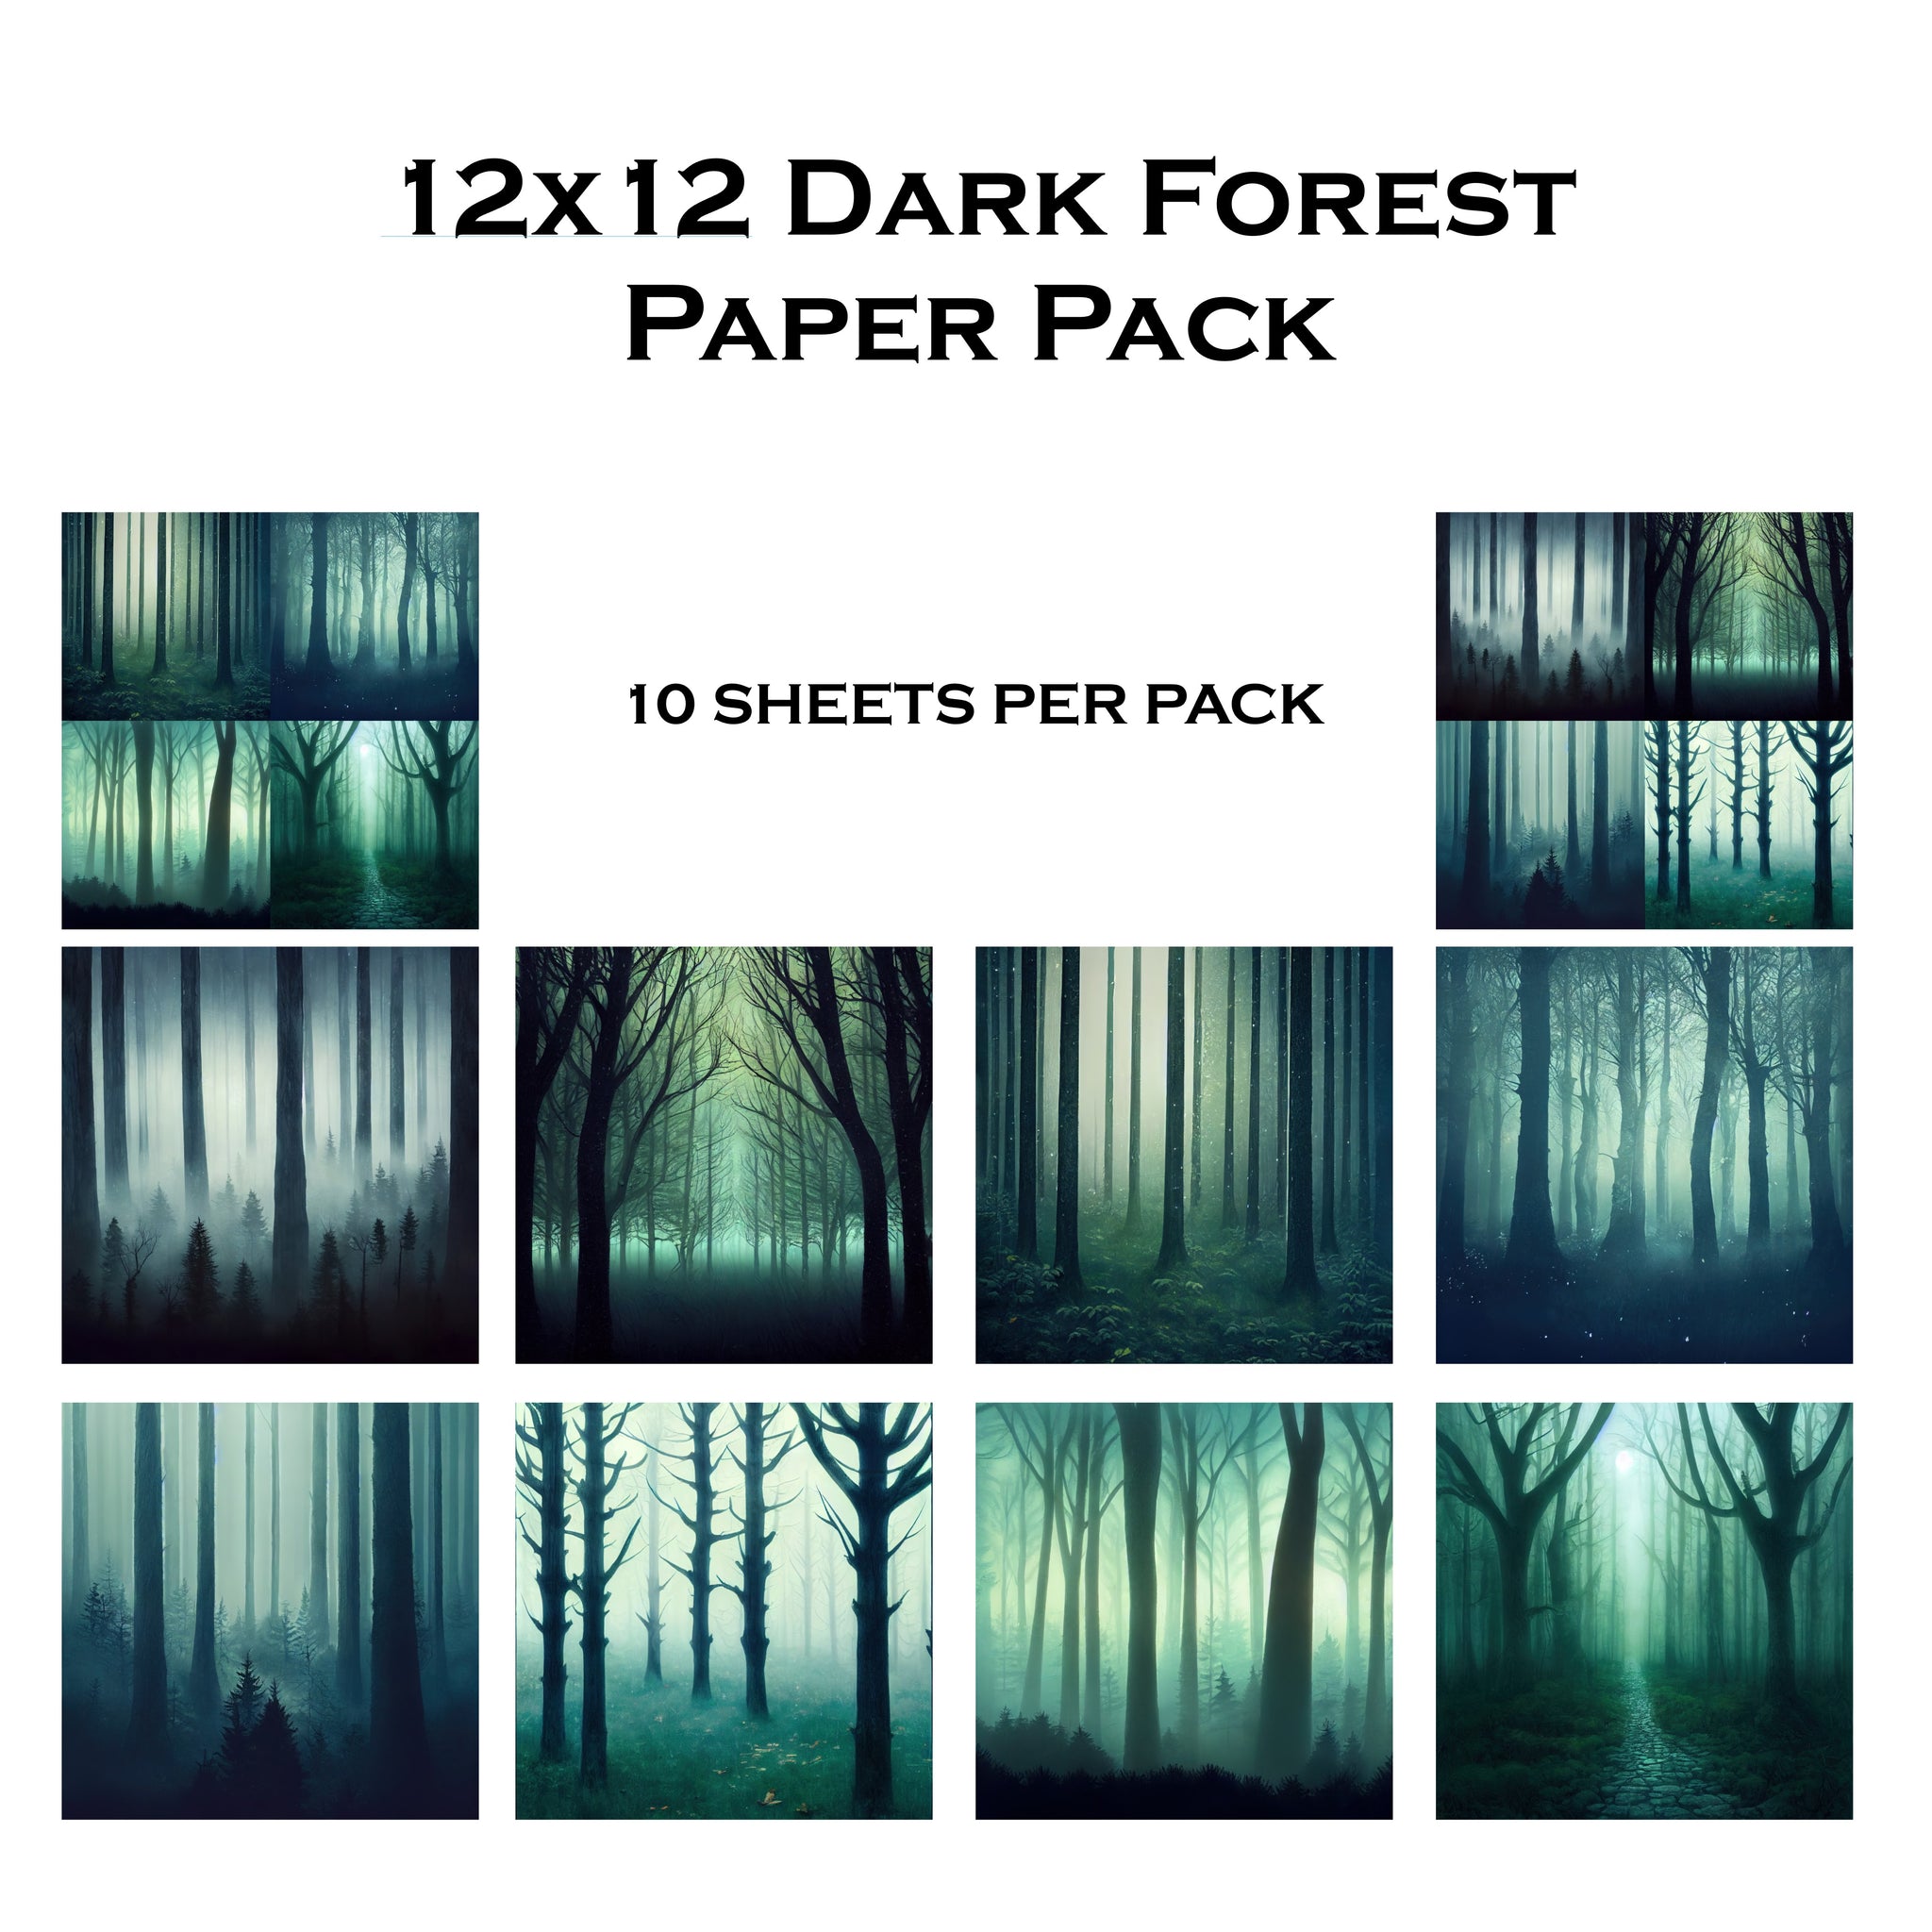 Dark Forest 12x12 Paper Pack